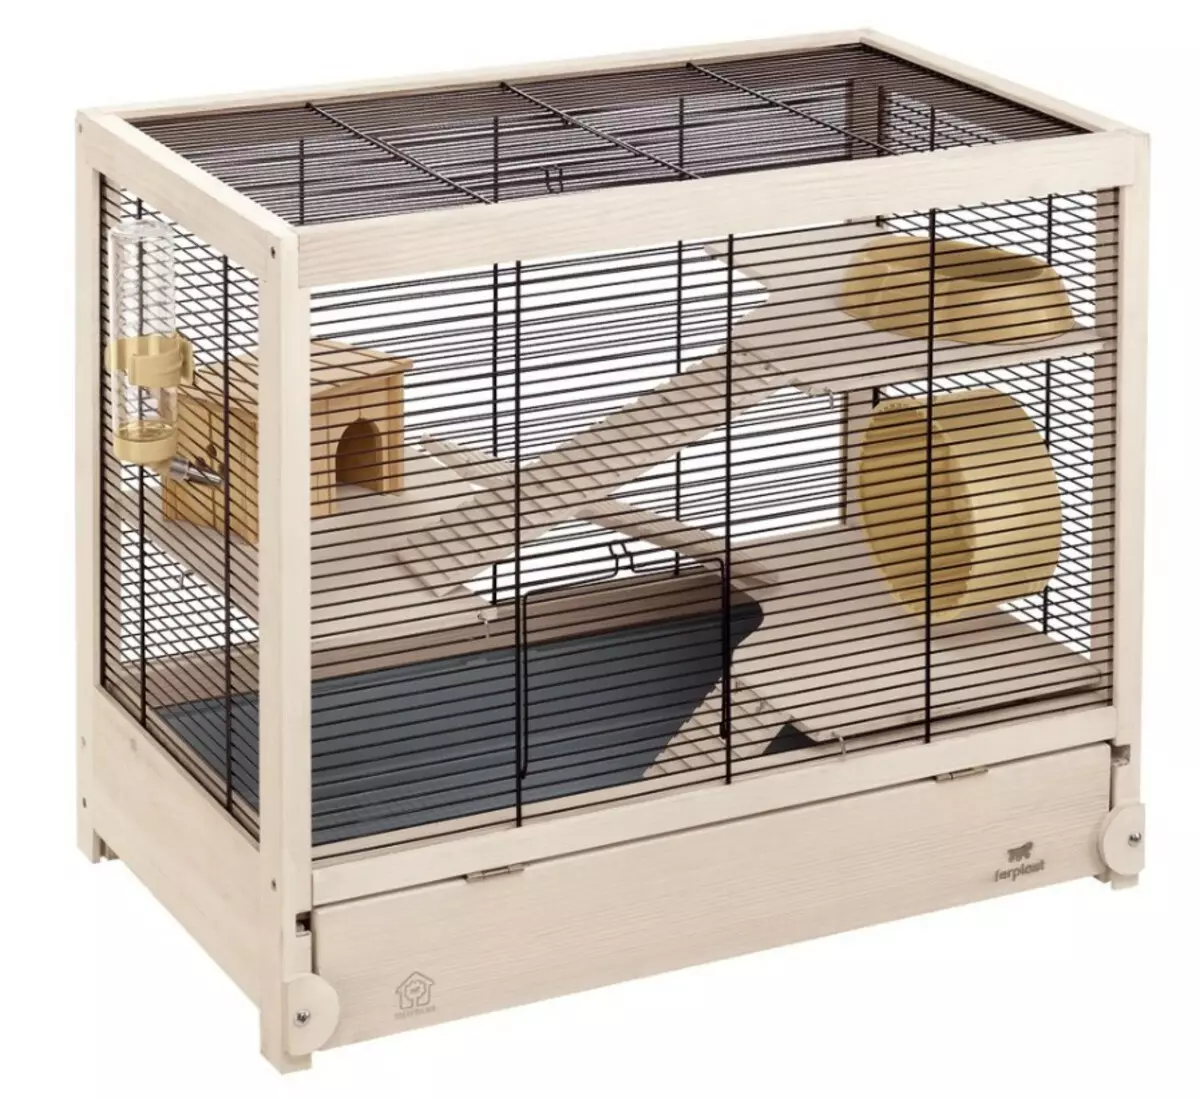 大鼠的籠子（35張）：應該是多少尺寸？什麼裝備大細胞？如何選擇兩個家庭大鼠的住宅？ 25120_15